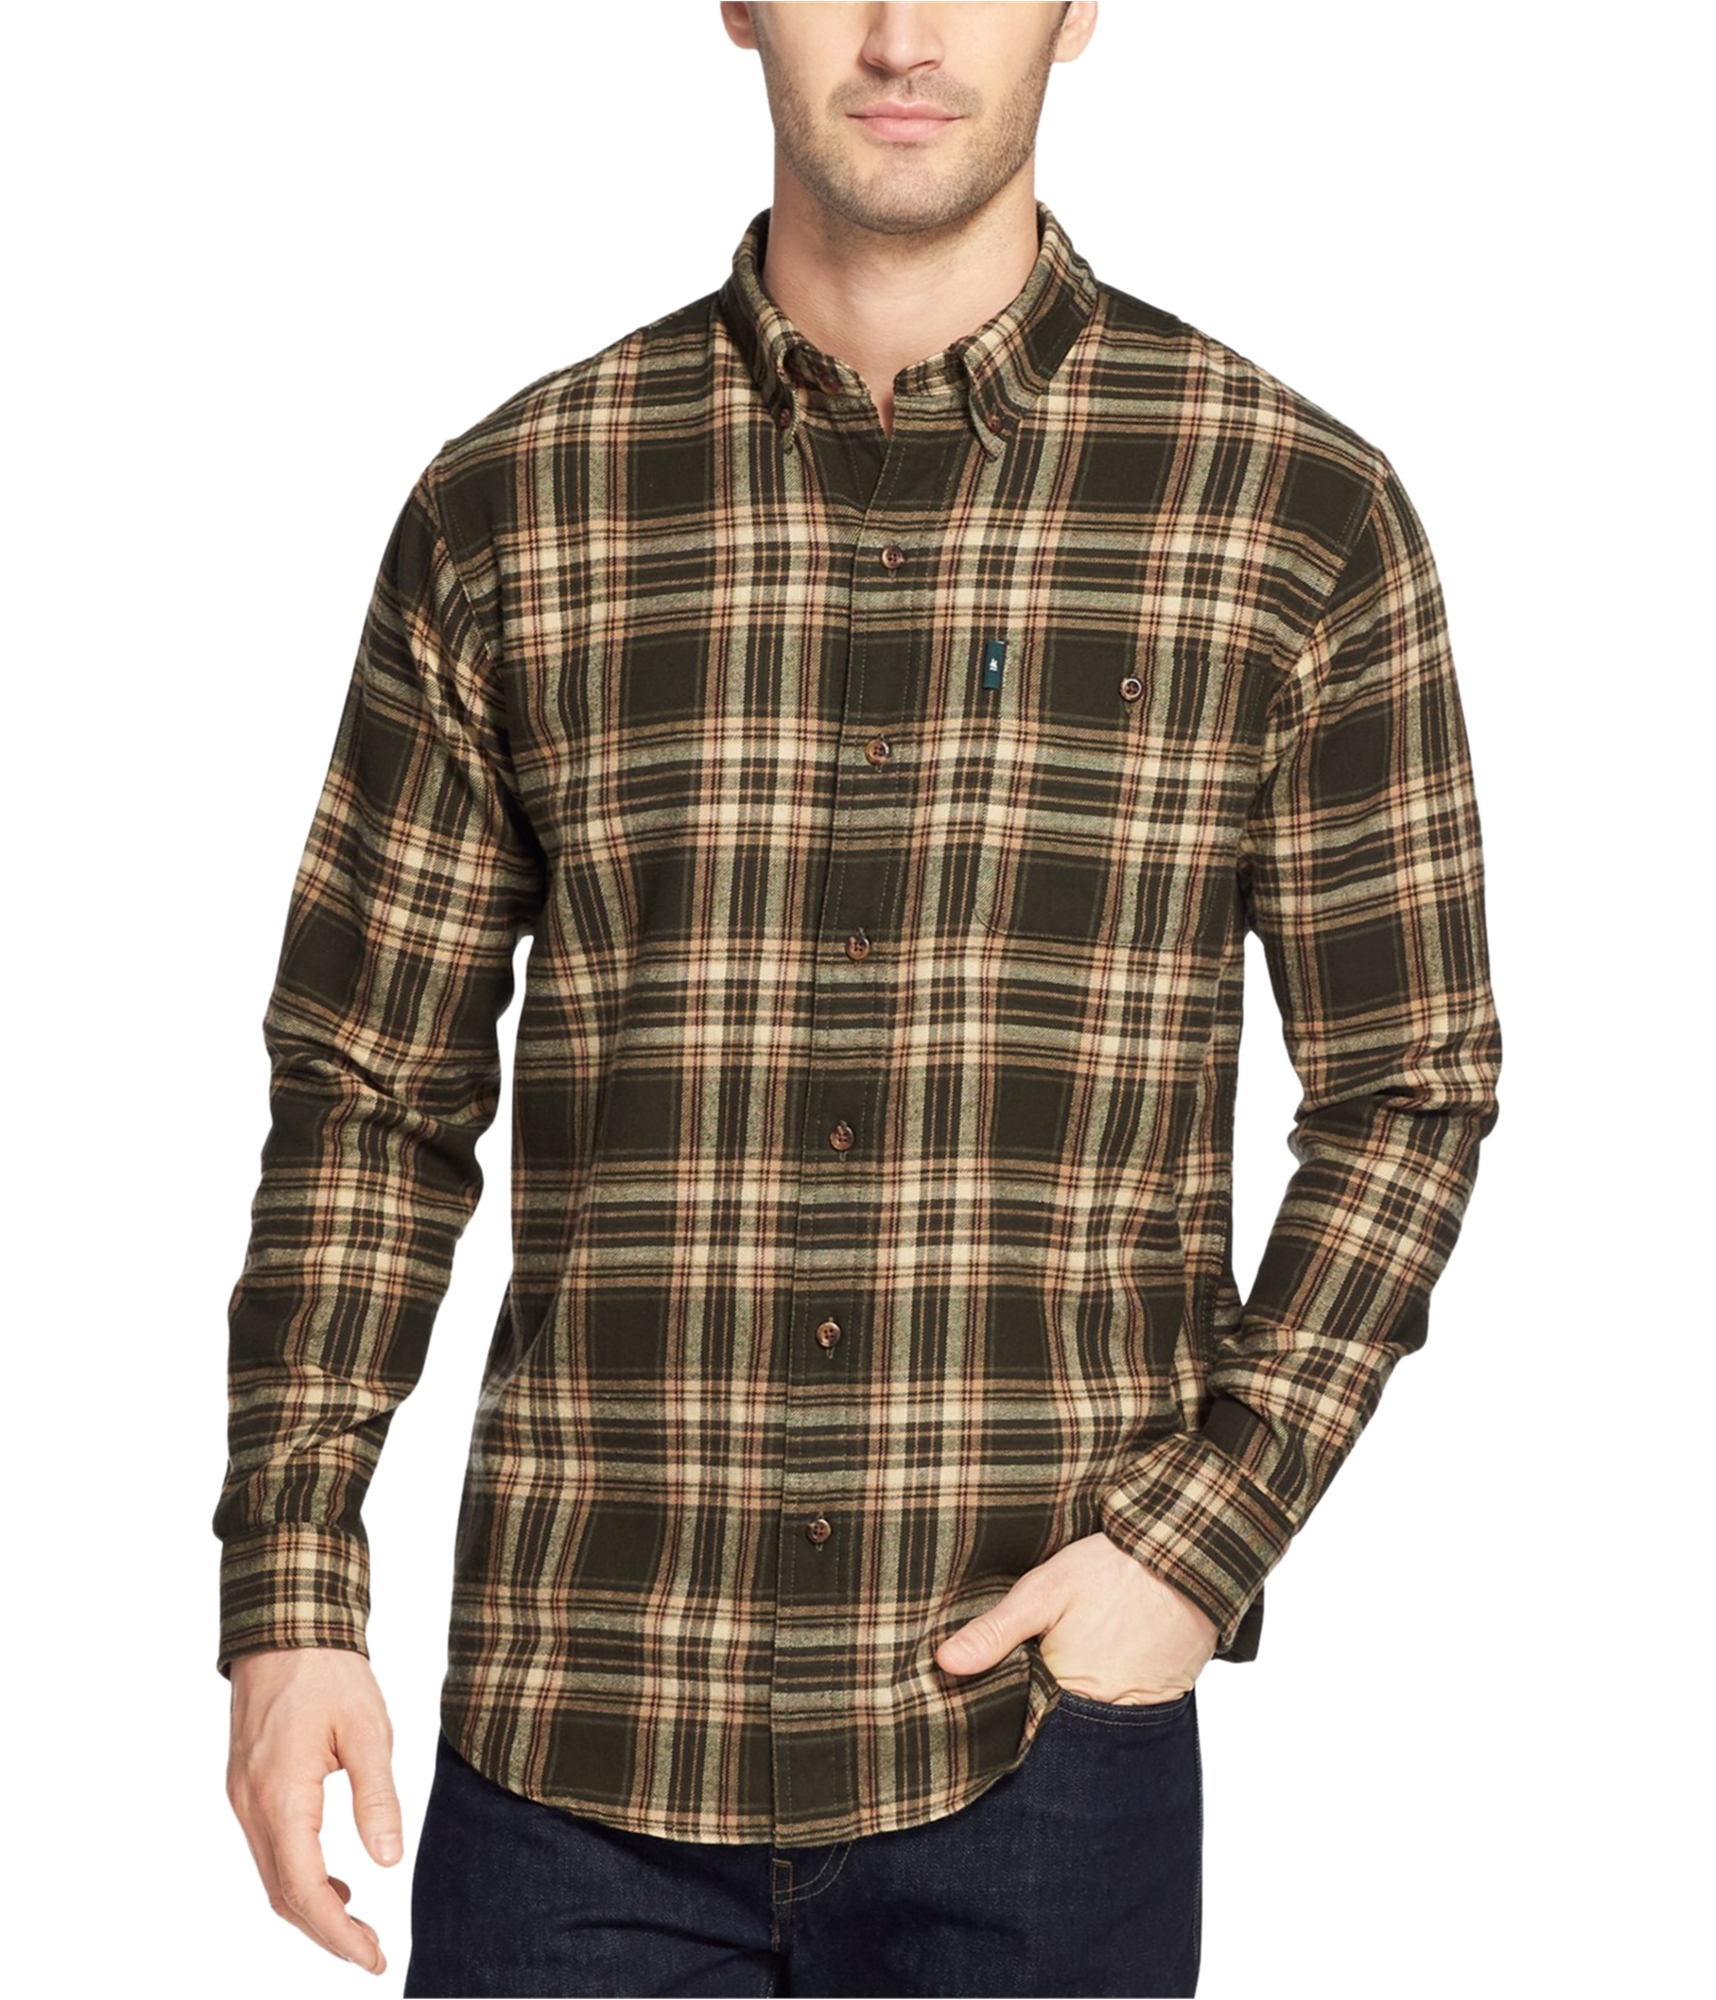 Buy a G.H. Bass & Co. Mens Fireside Flannel Button Up Shirt, TW4